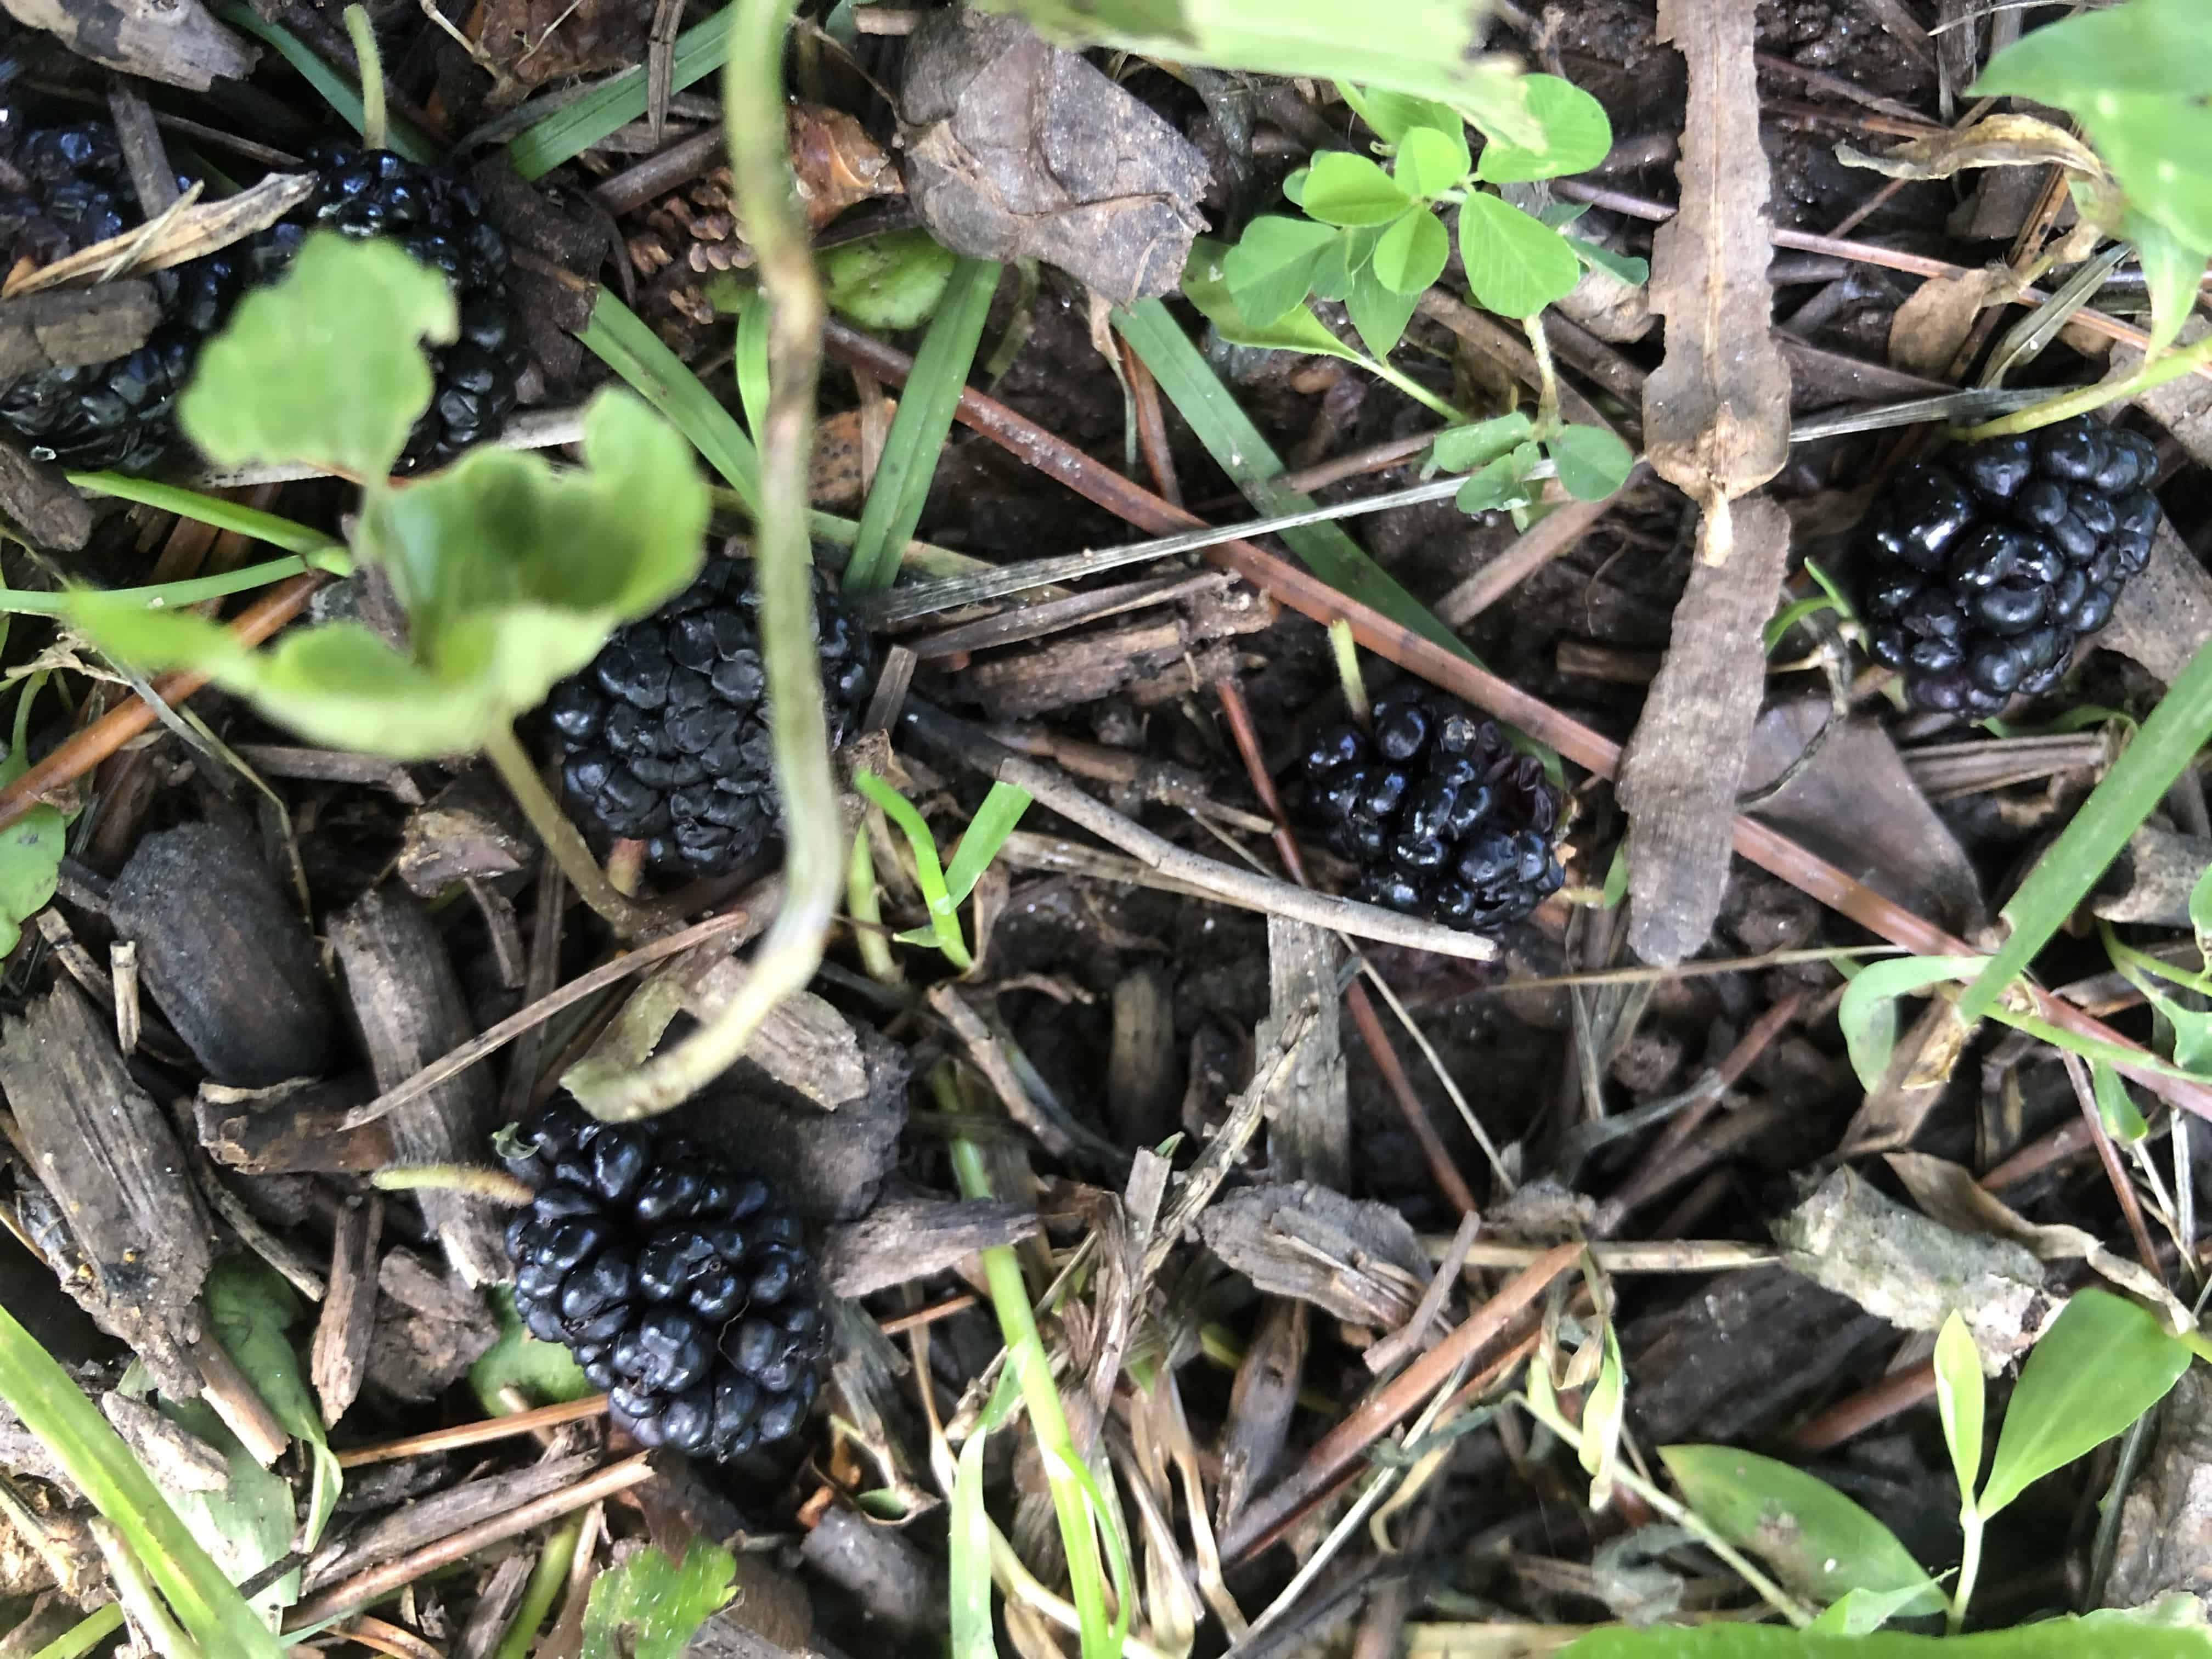 Fallen mulberries